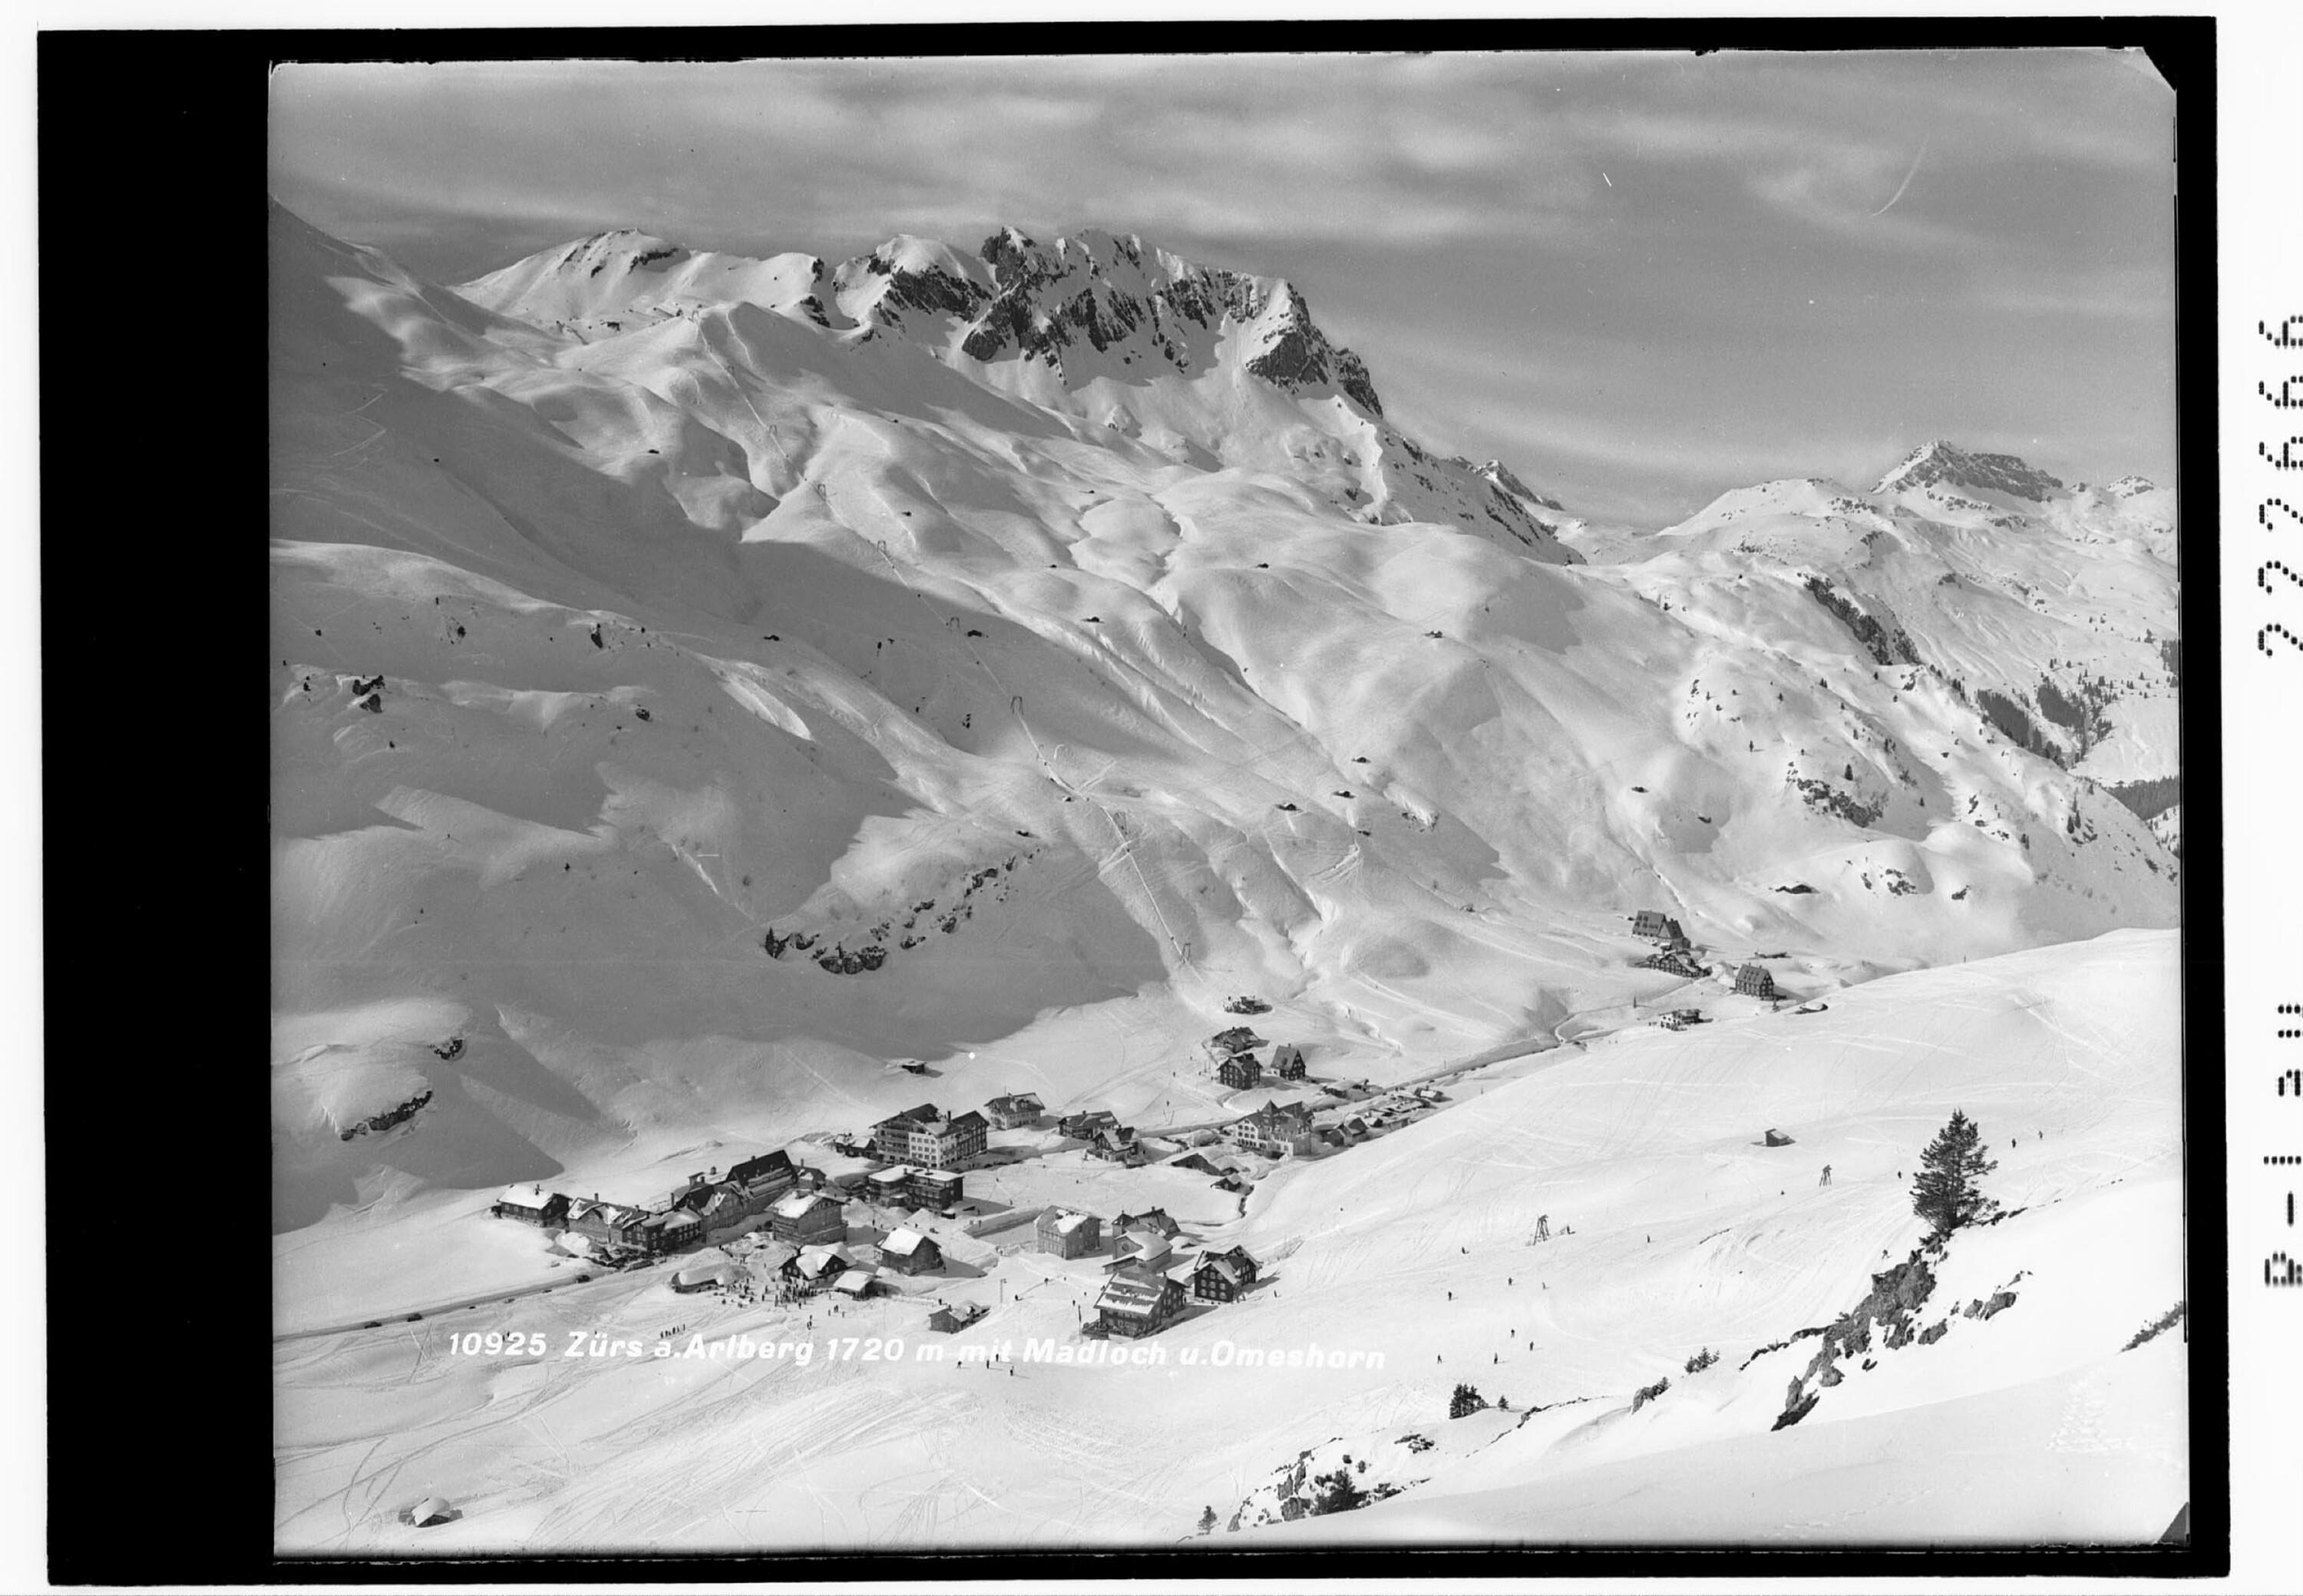 Zürs am Arlberg 1720 m mit Madloch und Omeshorn></div>


    <hr>
    <div class=